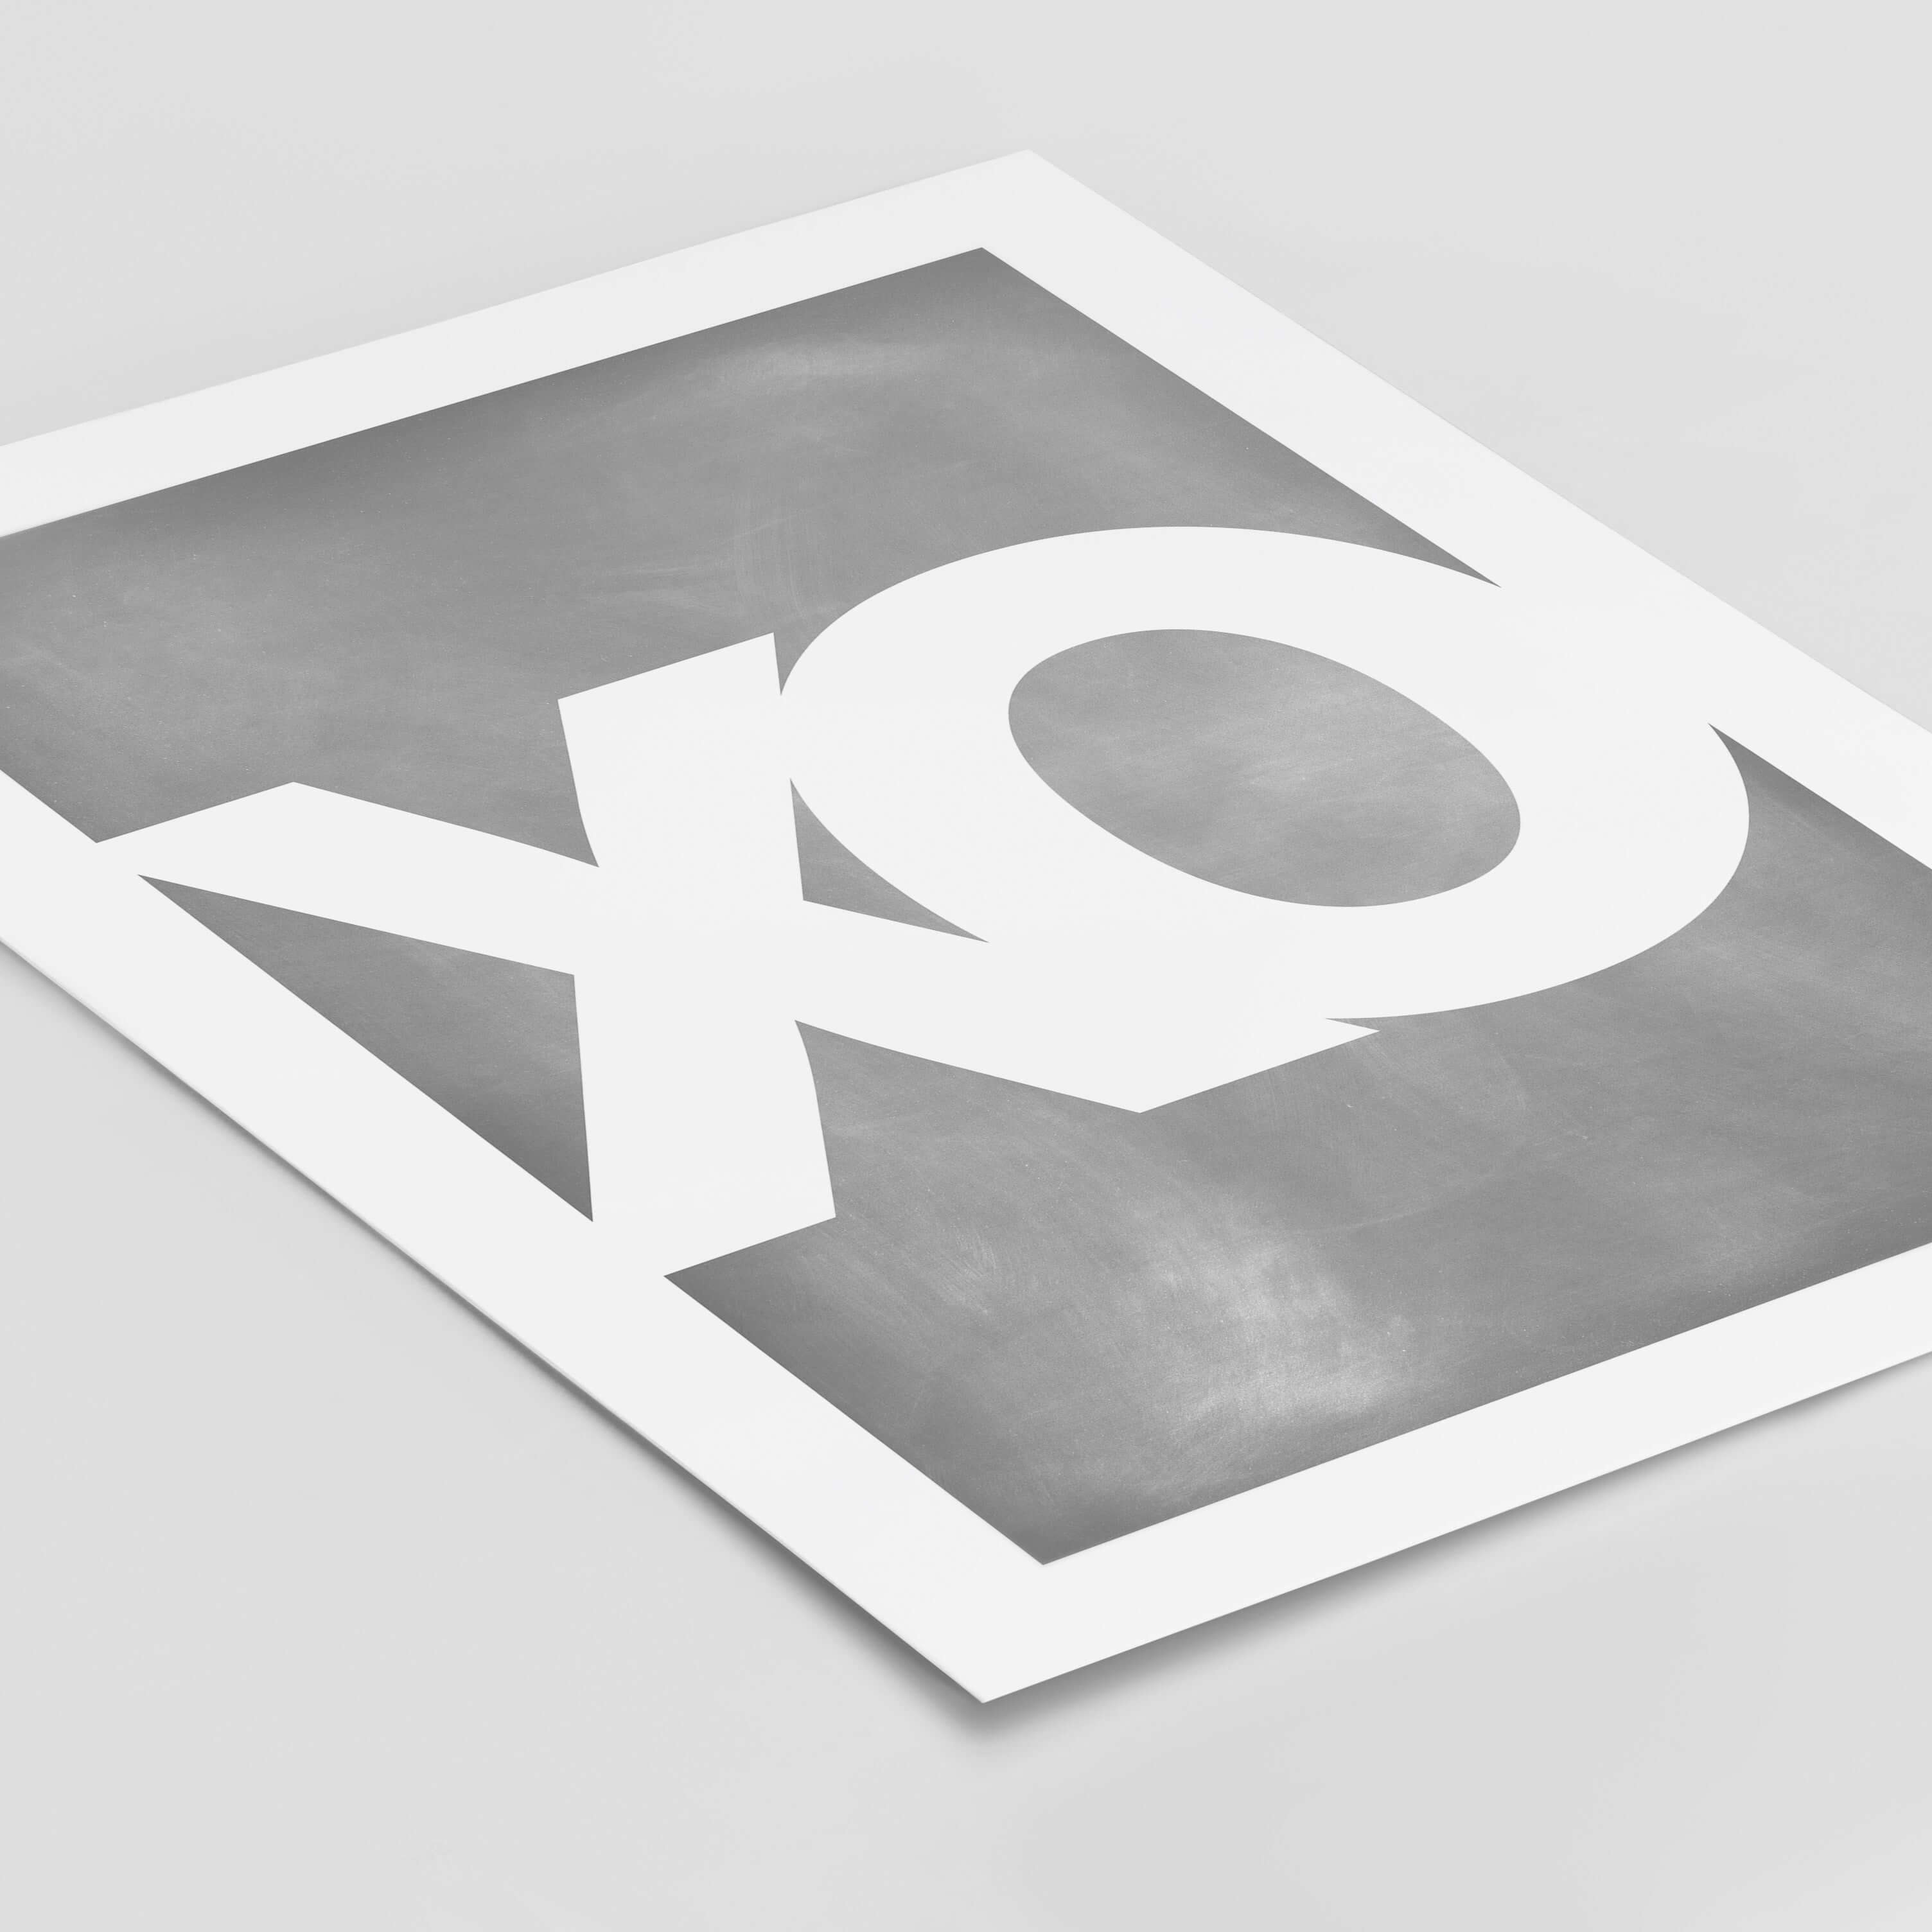 Poster 'XO' BF alt, schwarz weiß Poster, Sprüche Poster Poster Größe: Digitaler Download, 13x18cm, 21x30cm, 30x40cm, 40x50cm, 50x70cm, 61x91cm famprints